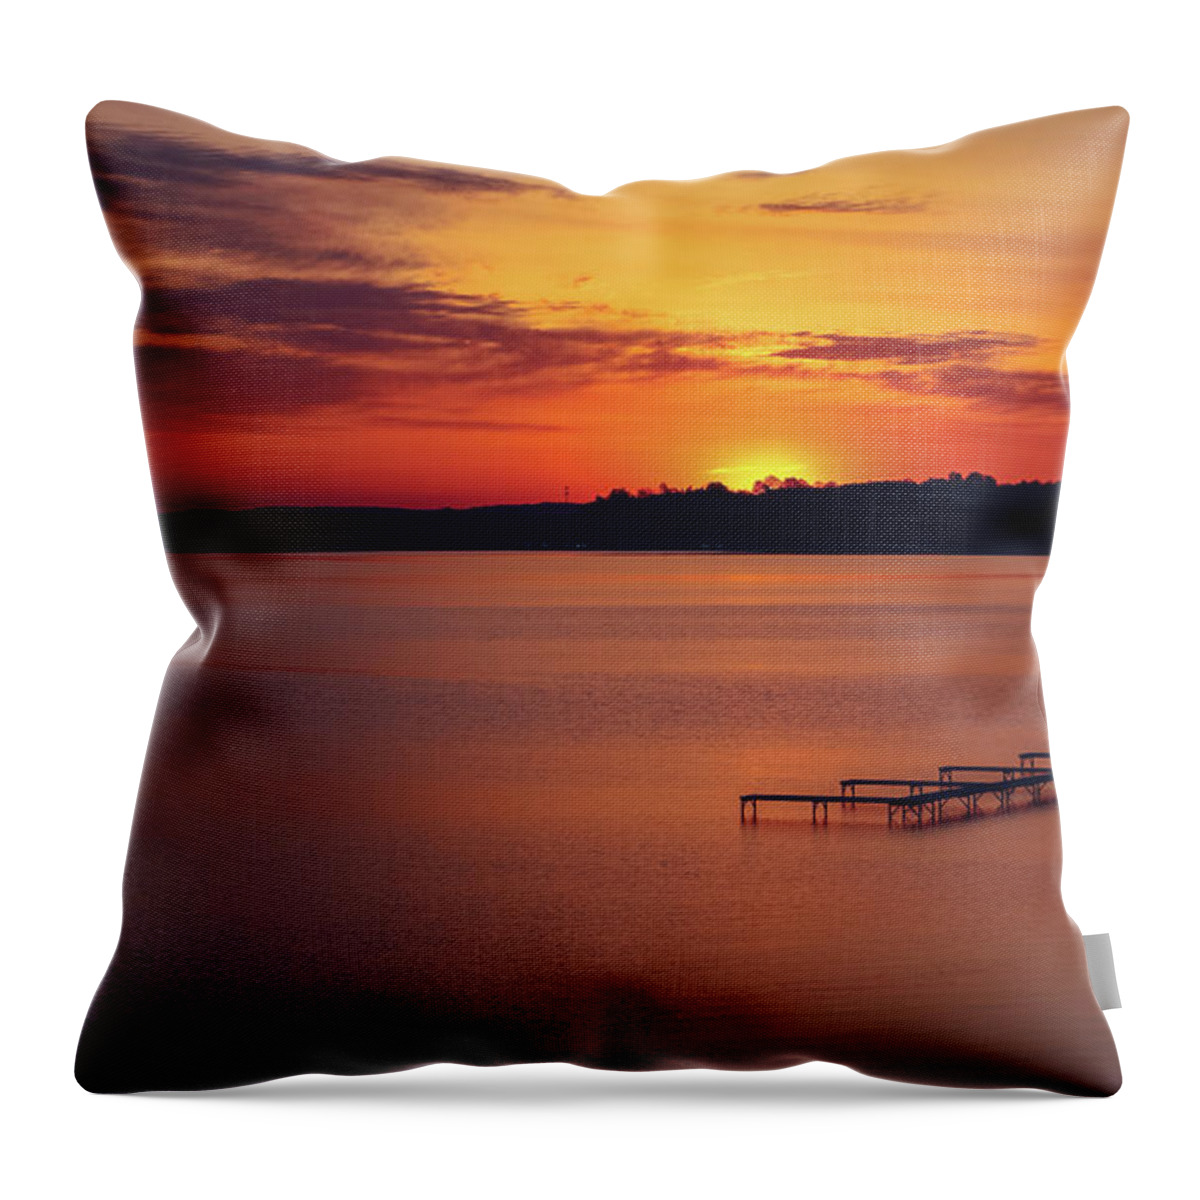 Sugar Beach Sunrise Throw Pillow featuring the photograph Sugar Beach Sunrise by Rachel Cohen